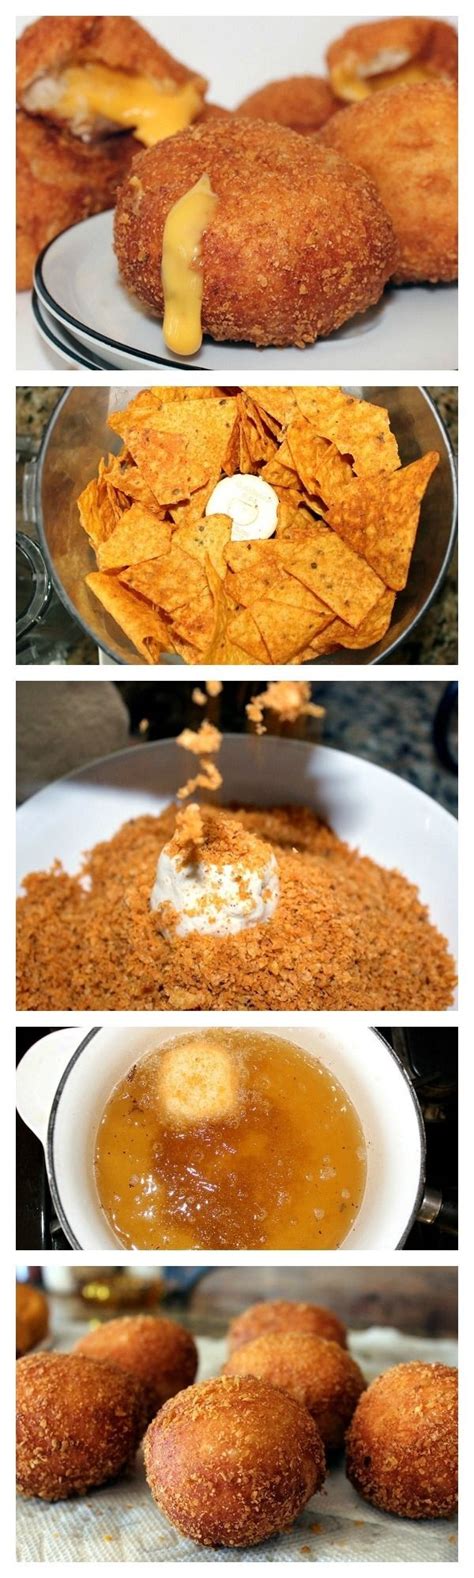 Make tandoori chicken on your grill! 13 Recetas que no sabías que podías hacer con los Doritos